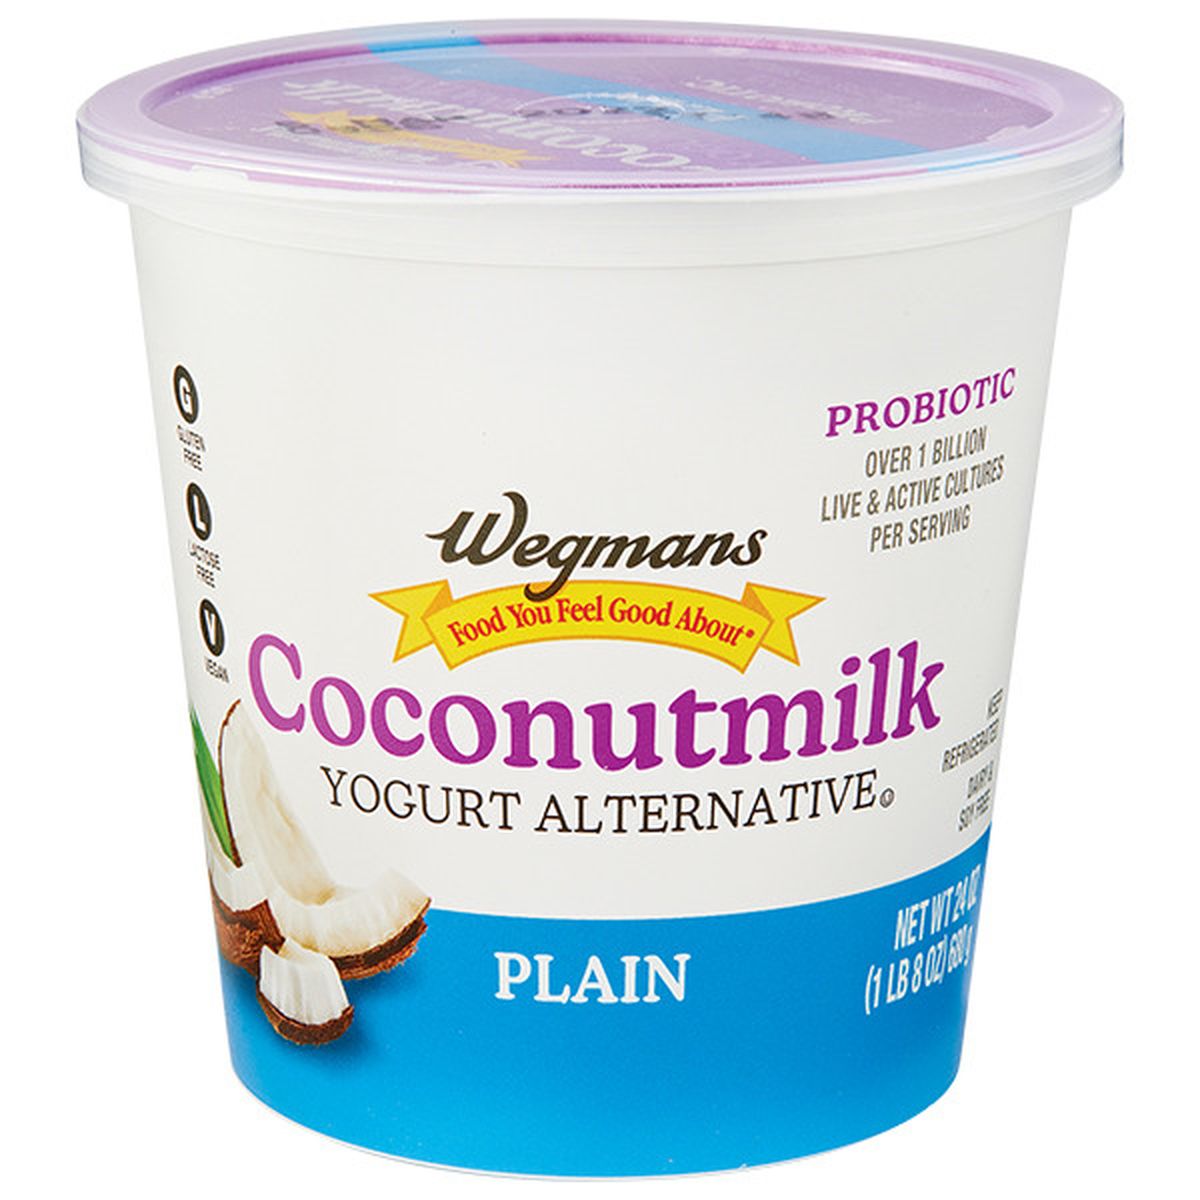 Calories in Wegmans Coconutmilk Yogurt Alternative, Plain